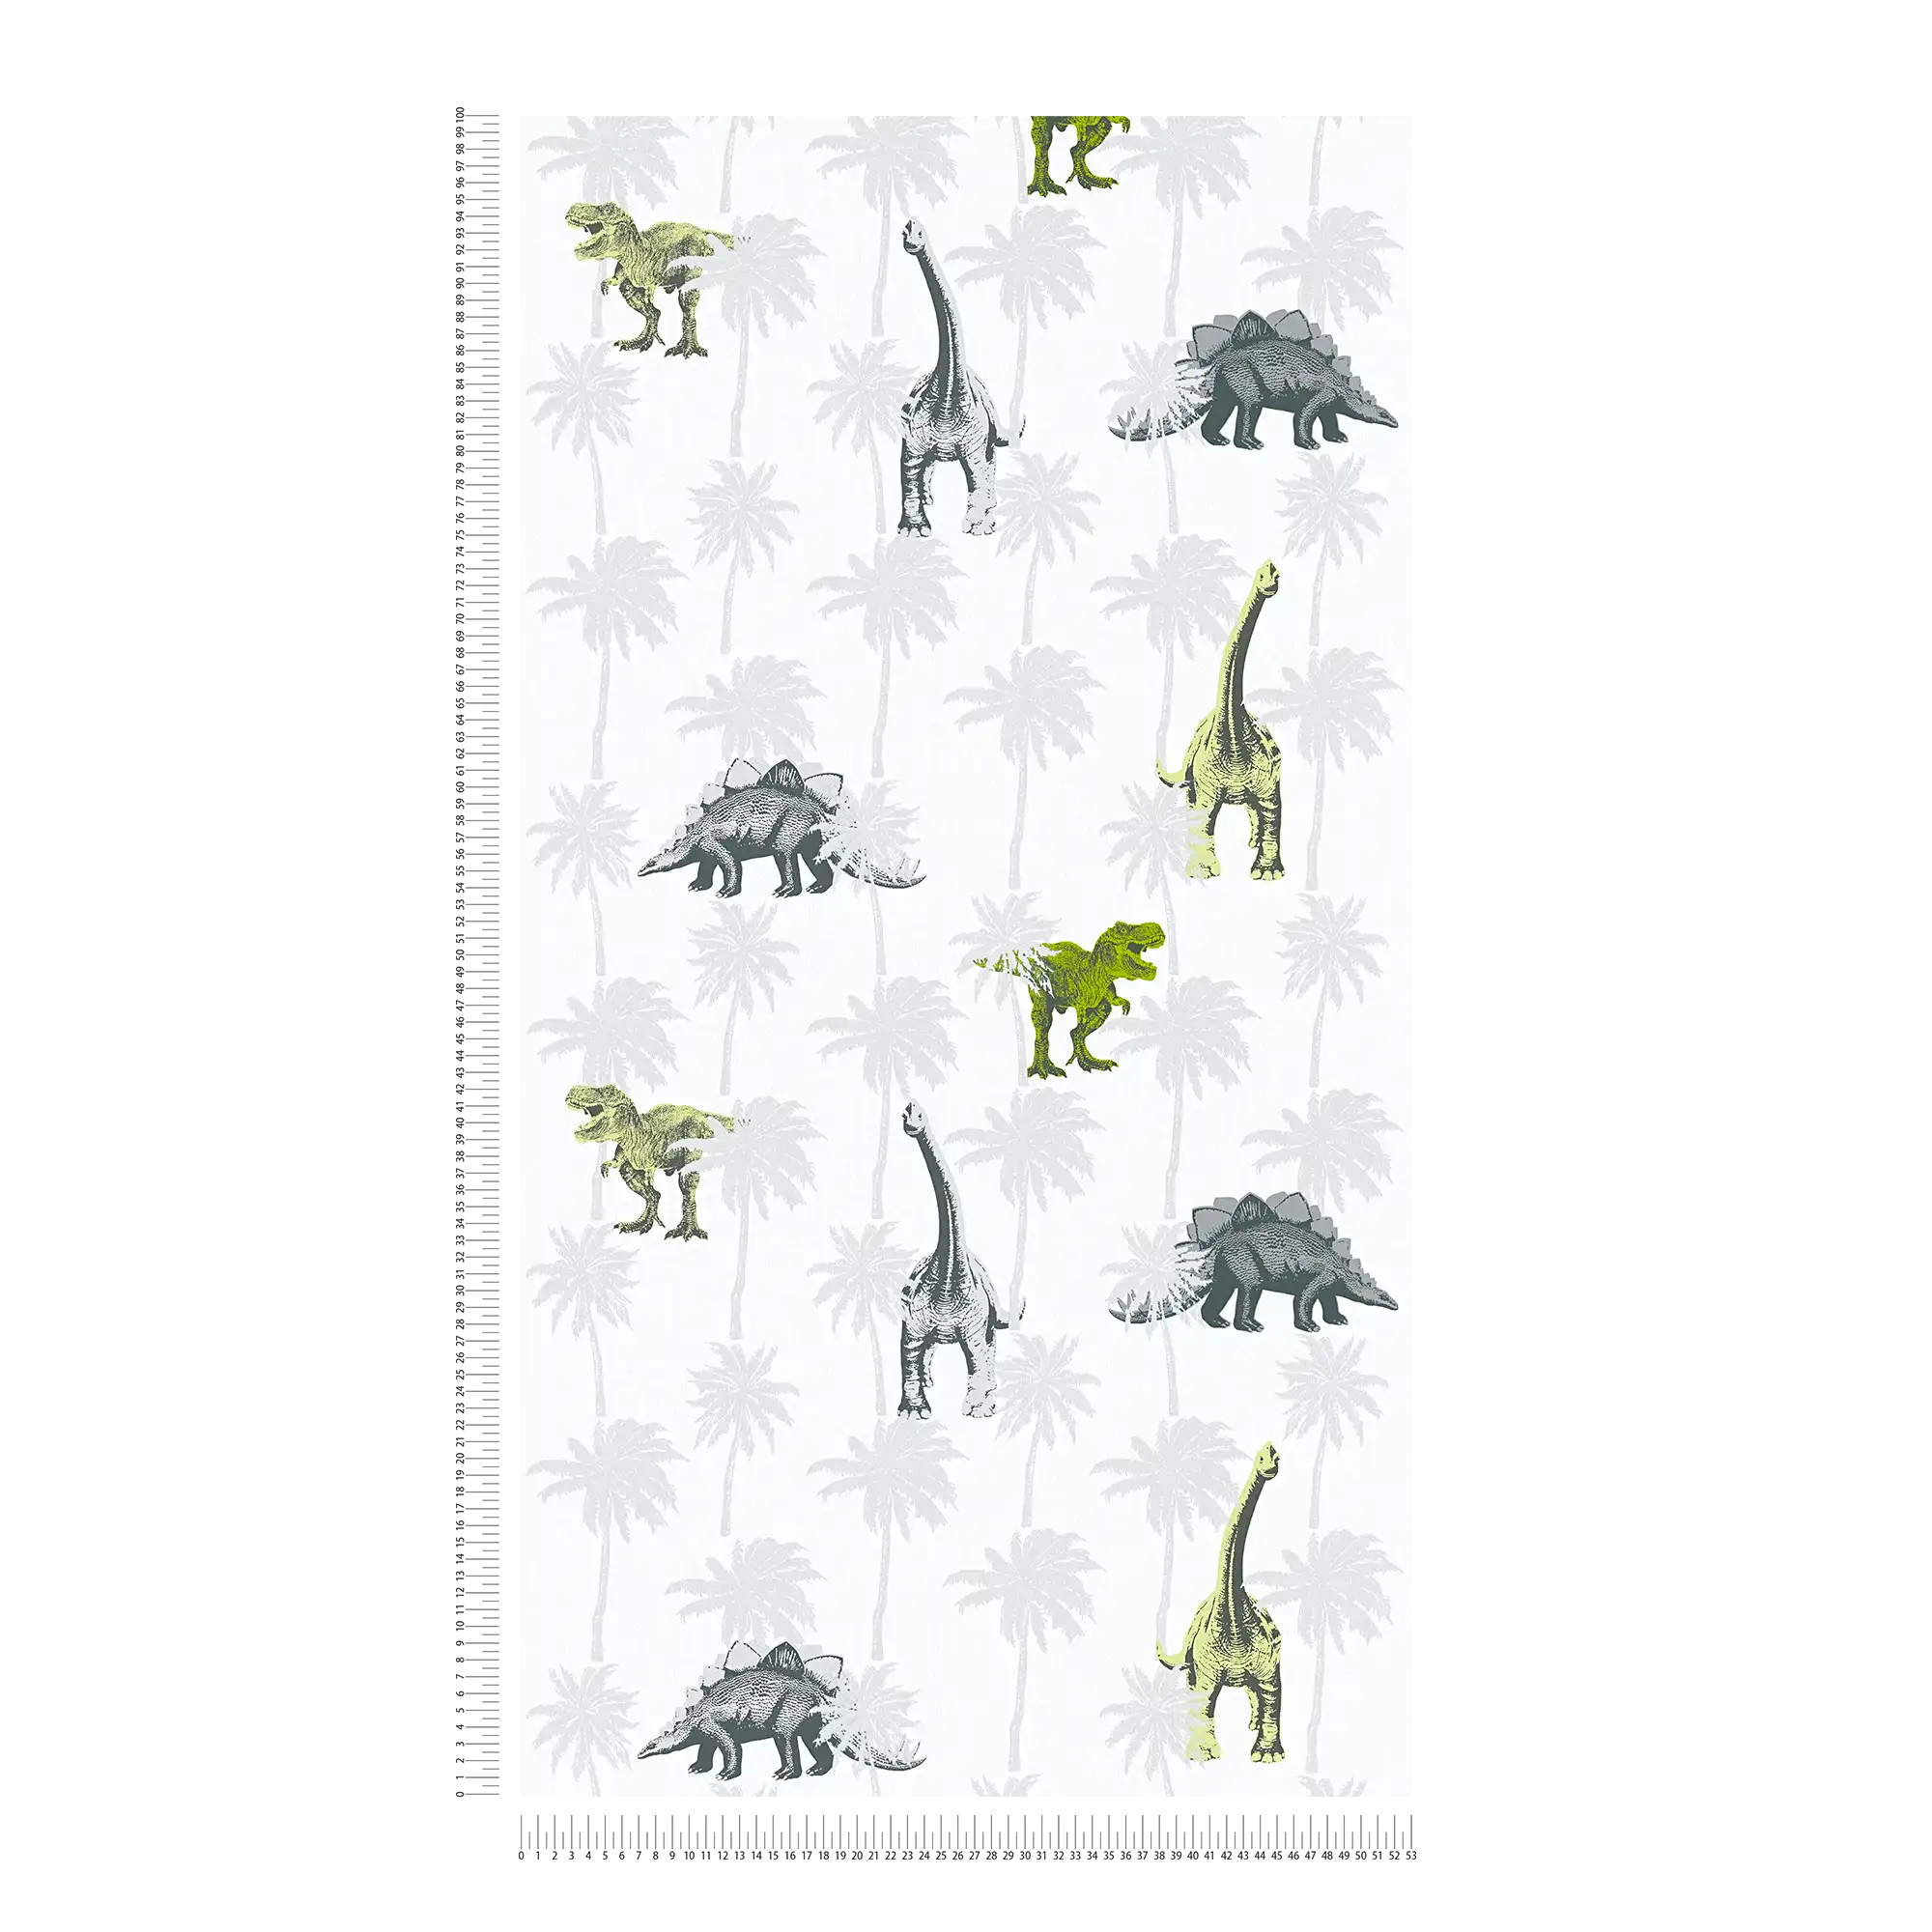             Kids room wallpaper dinosaur for boys - grey, green
        